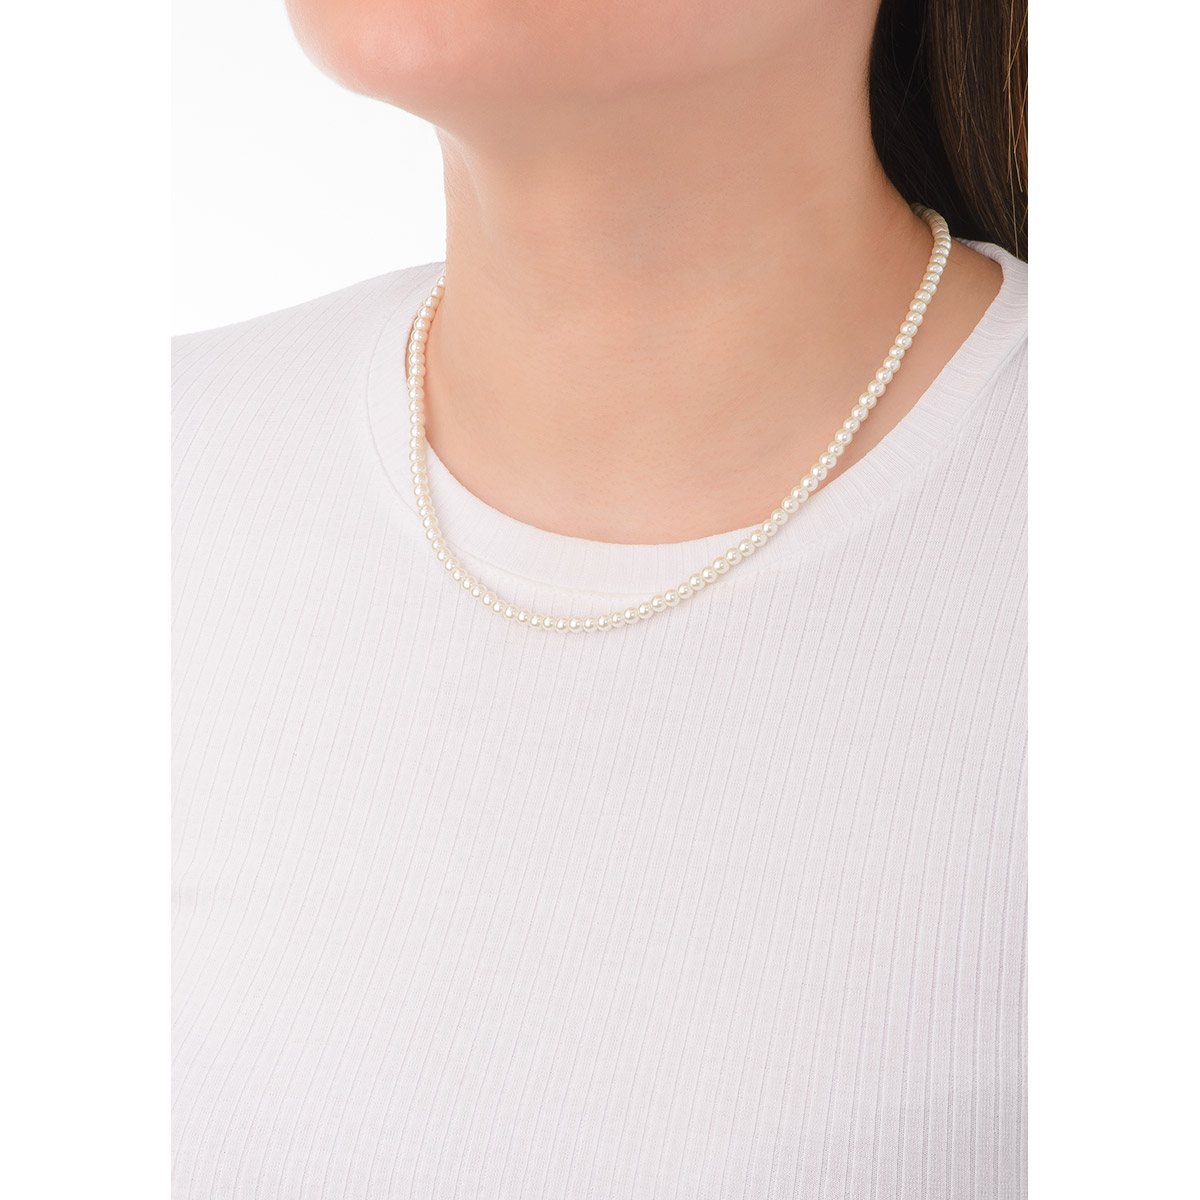 Collar de 41 cm más 10 cm de extensión en baño de oro con perla 4mm en tono crema